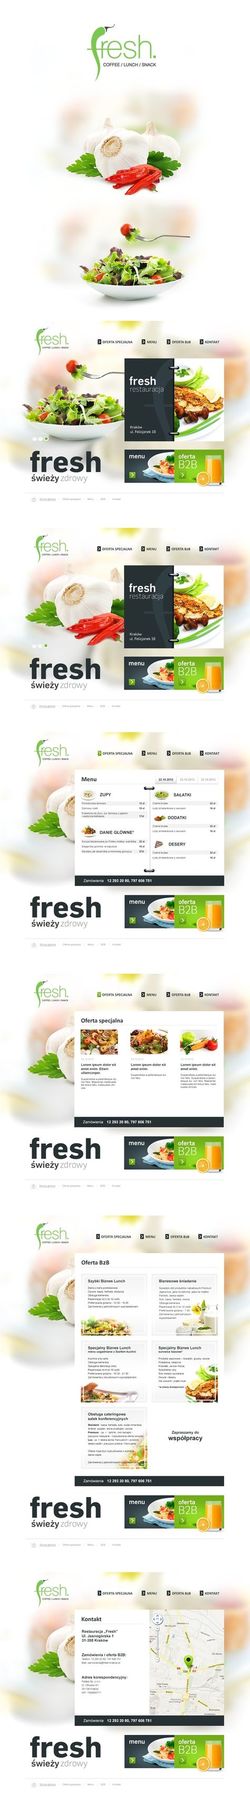 新鲜蔬菜网页设计